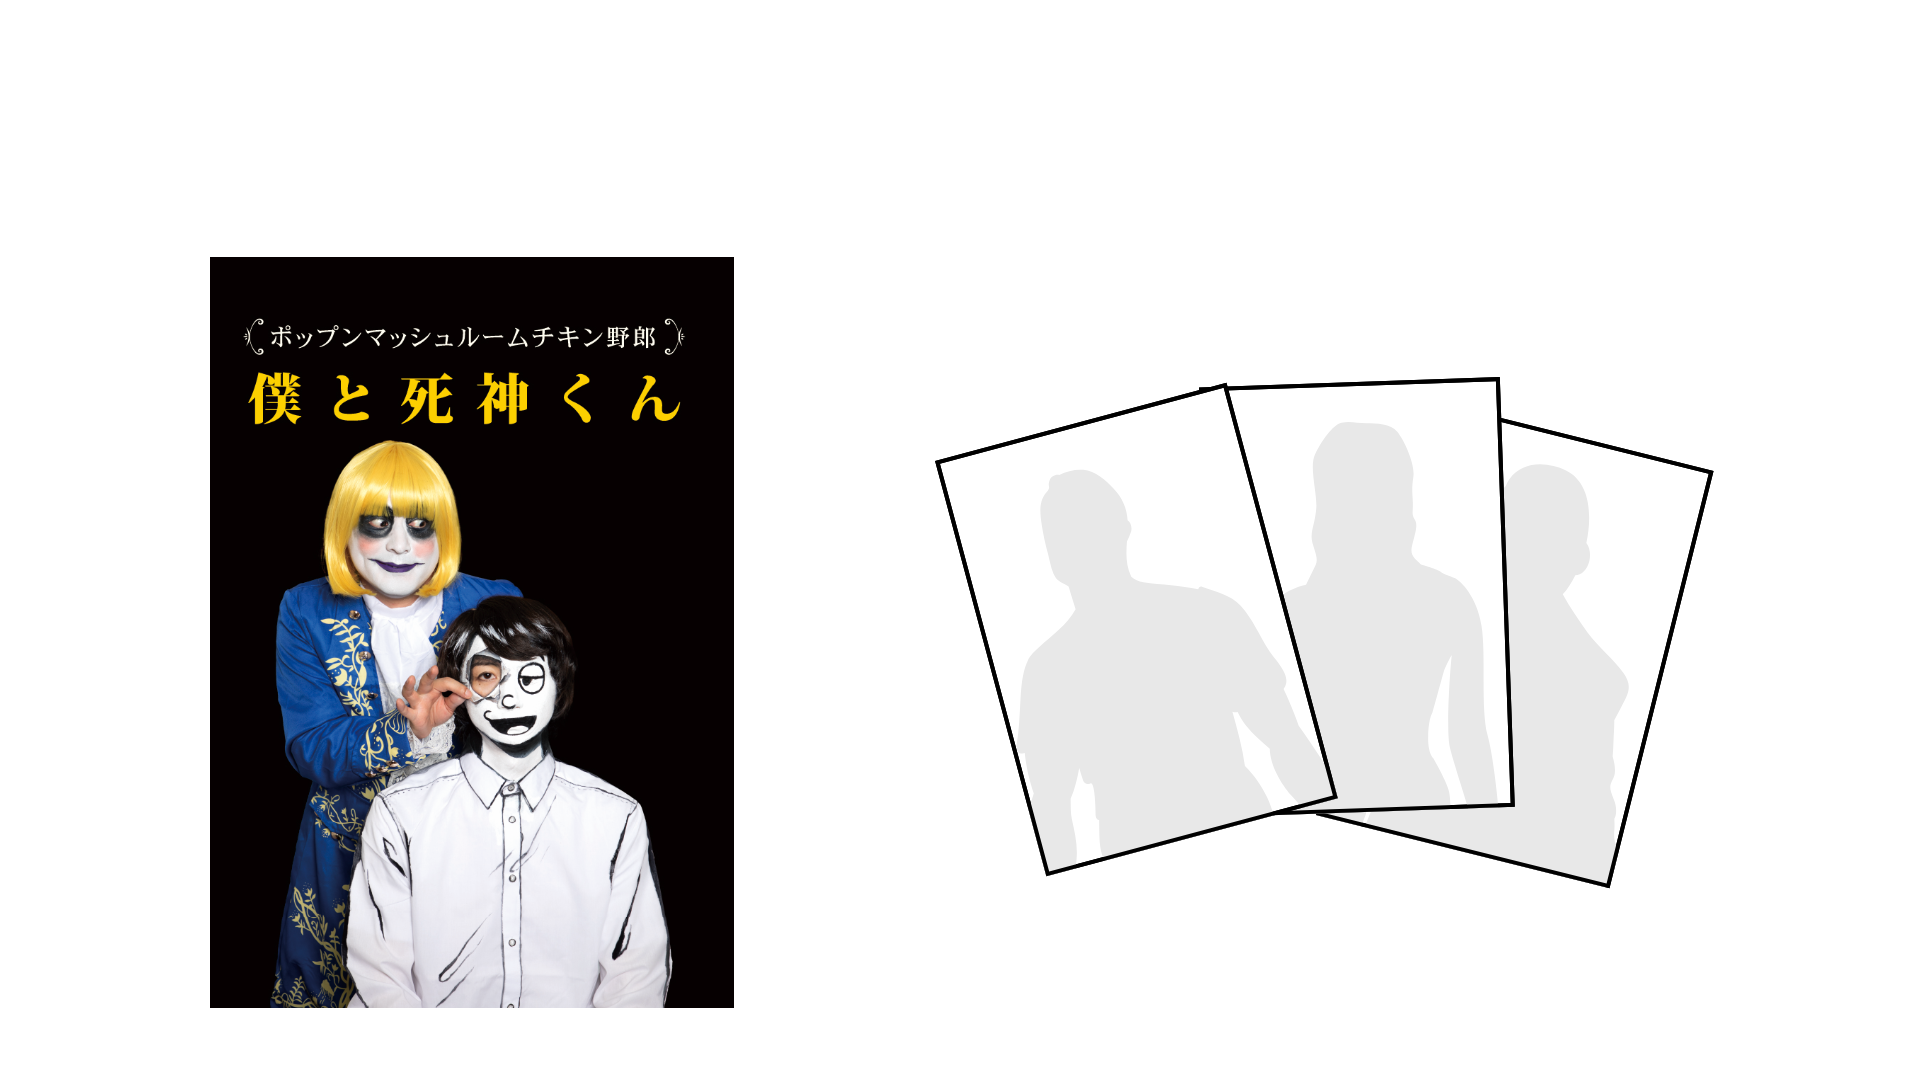 1.「僕と死神くん」DVD付き ウハウハブロマイド3枚